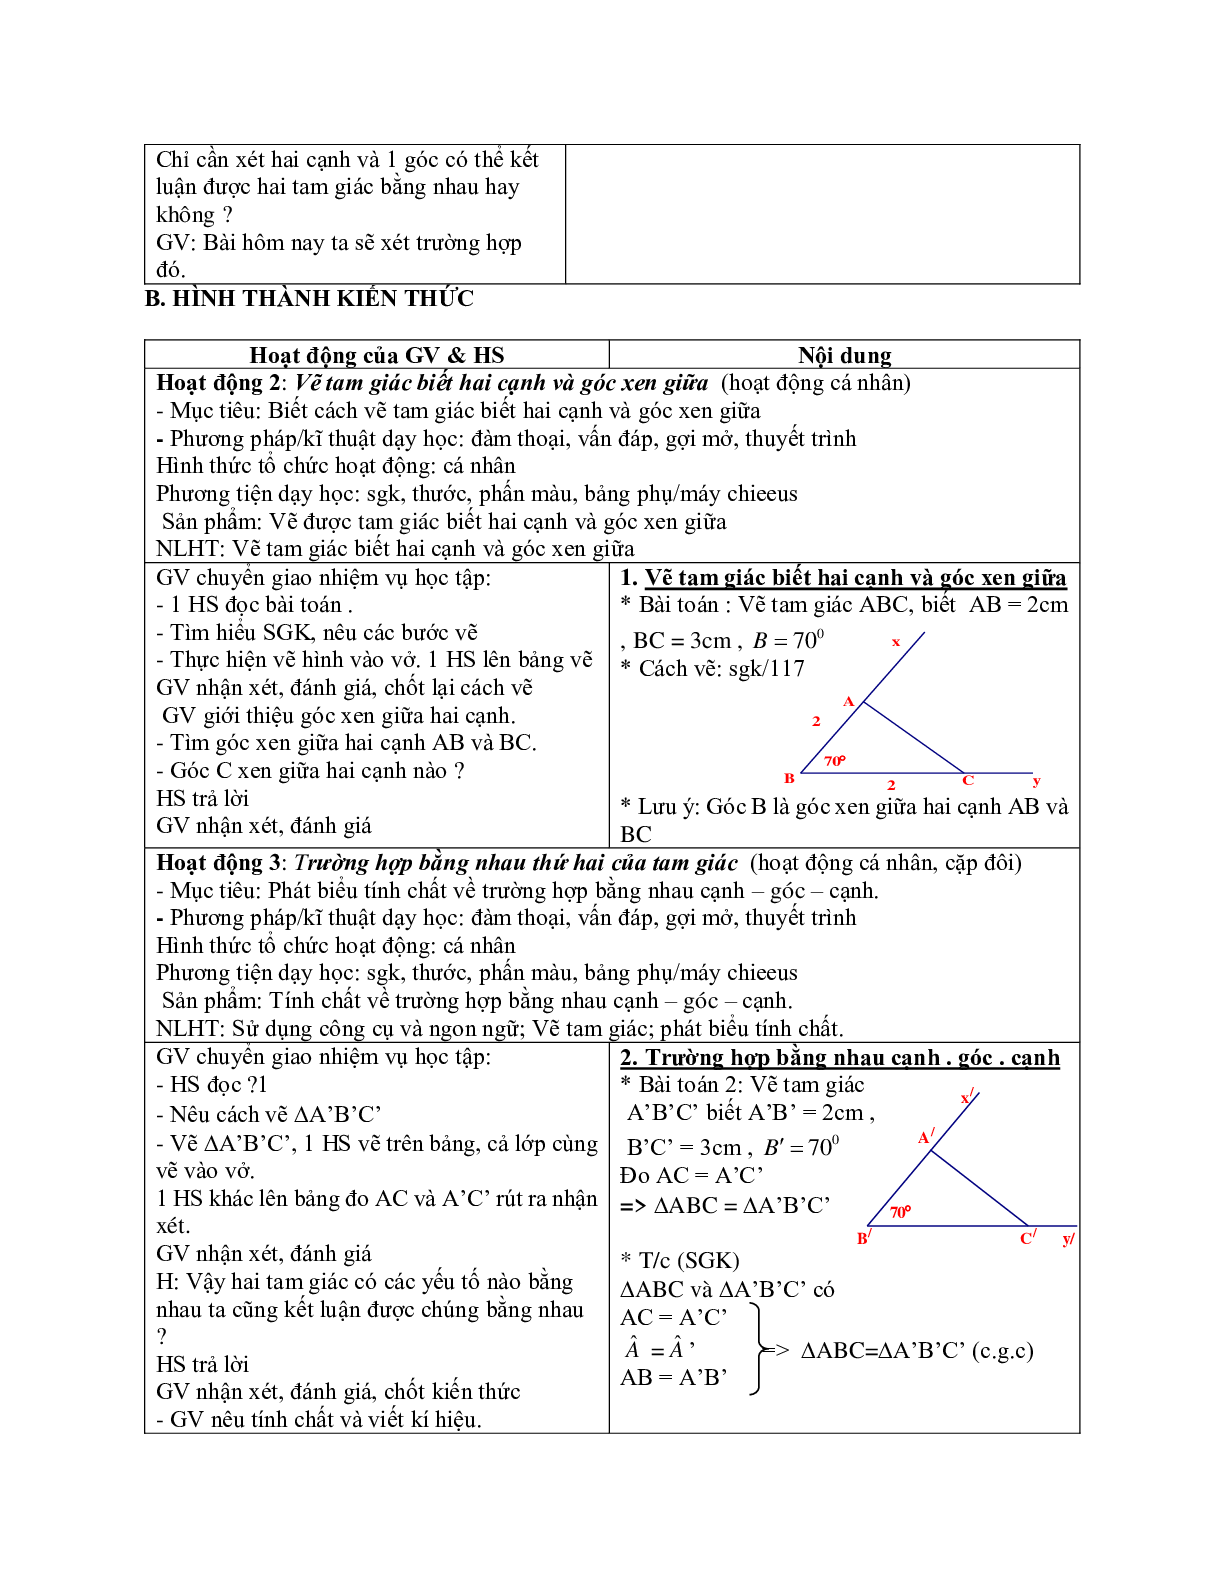 Giáo án Toán 7 bài 4: Trường hợp bằng nhau thứ hai của tam giác cạnh - góc - cạnh mới nhất (trang 2)